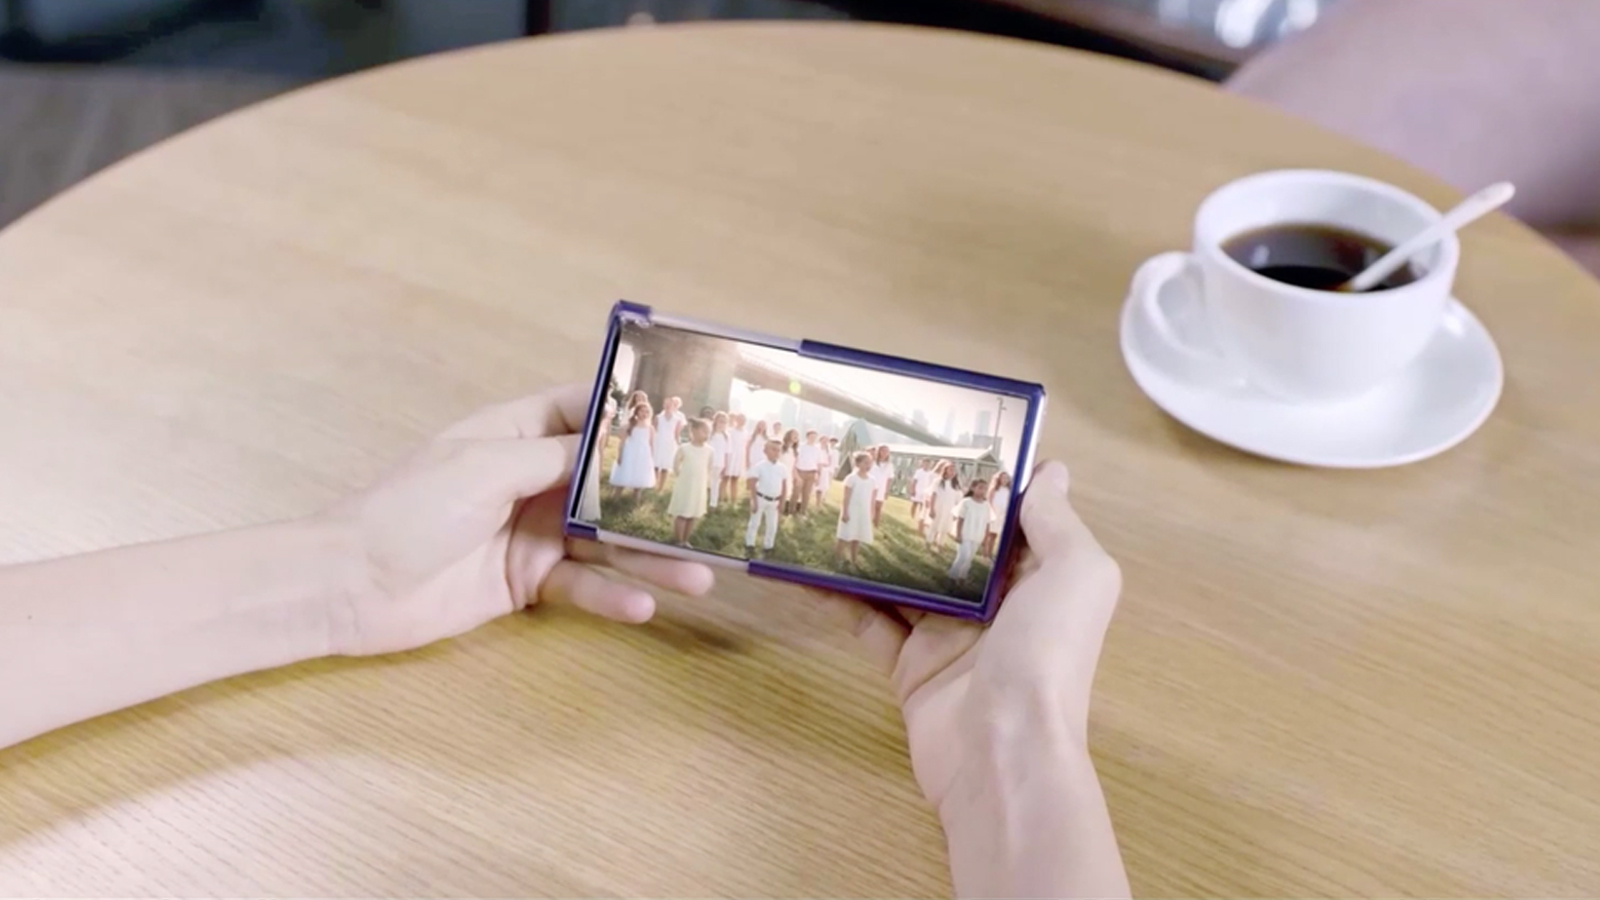 Samsungs grote verrassing tijdens Unpacked de oprolbare smartphone